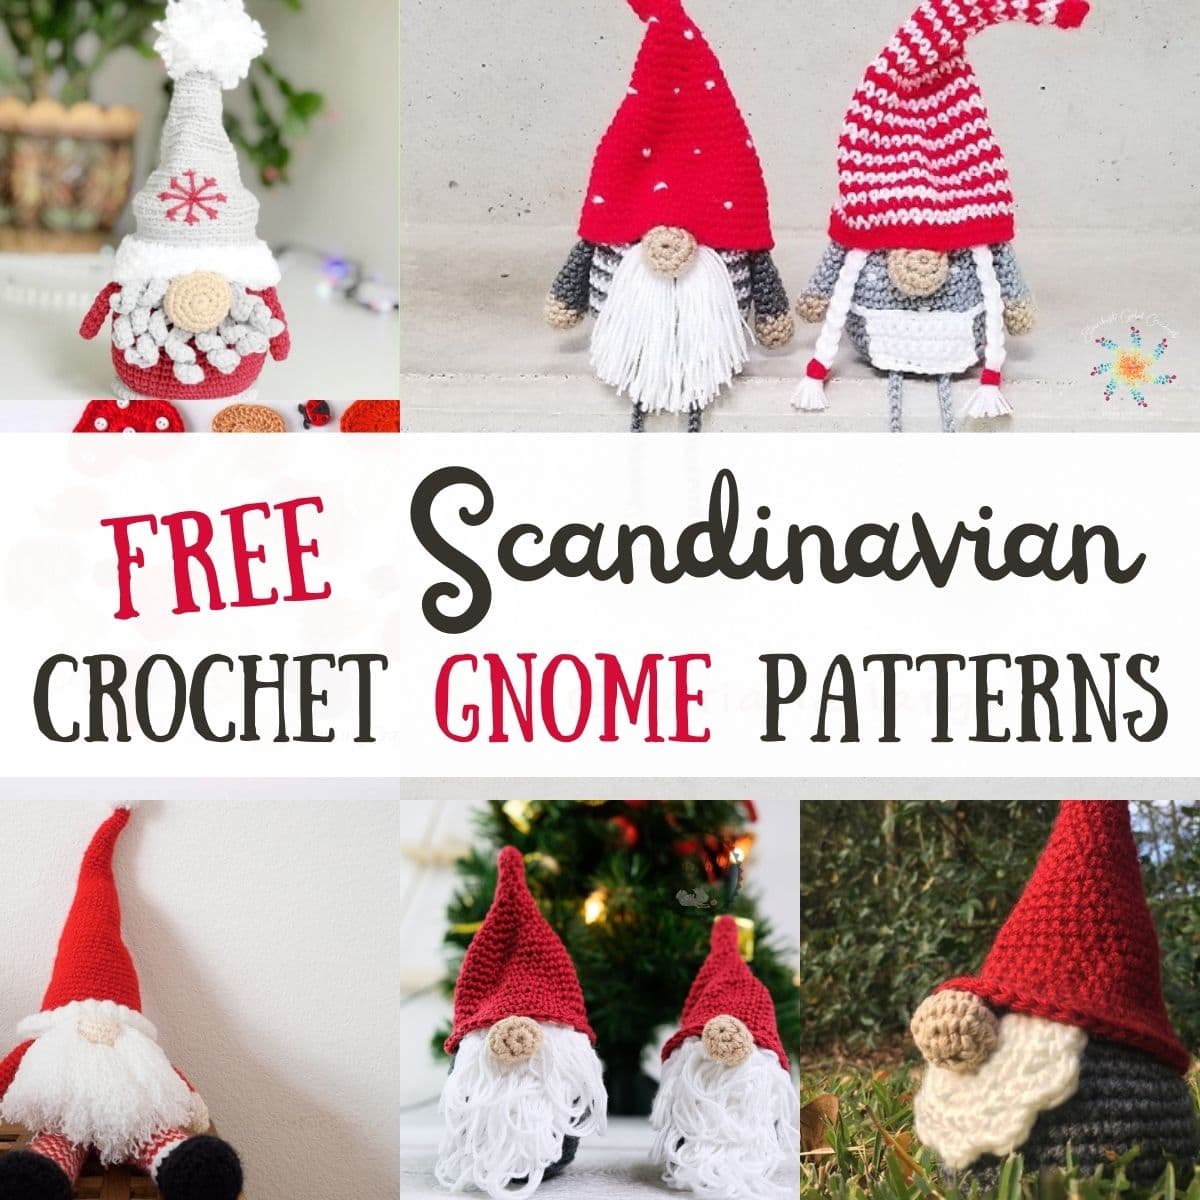 Scandinavian crochet gnome patterns